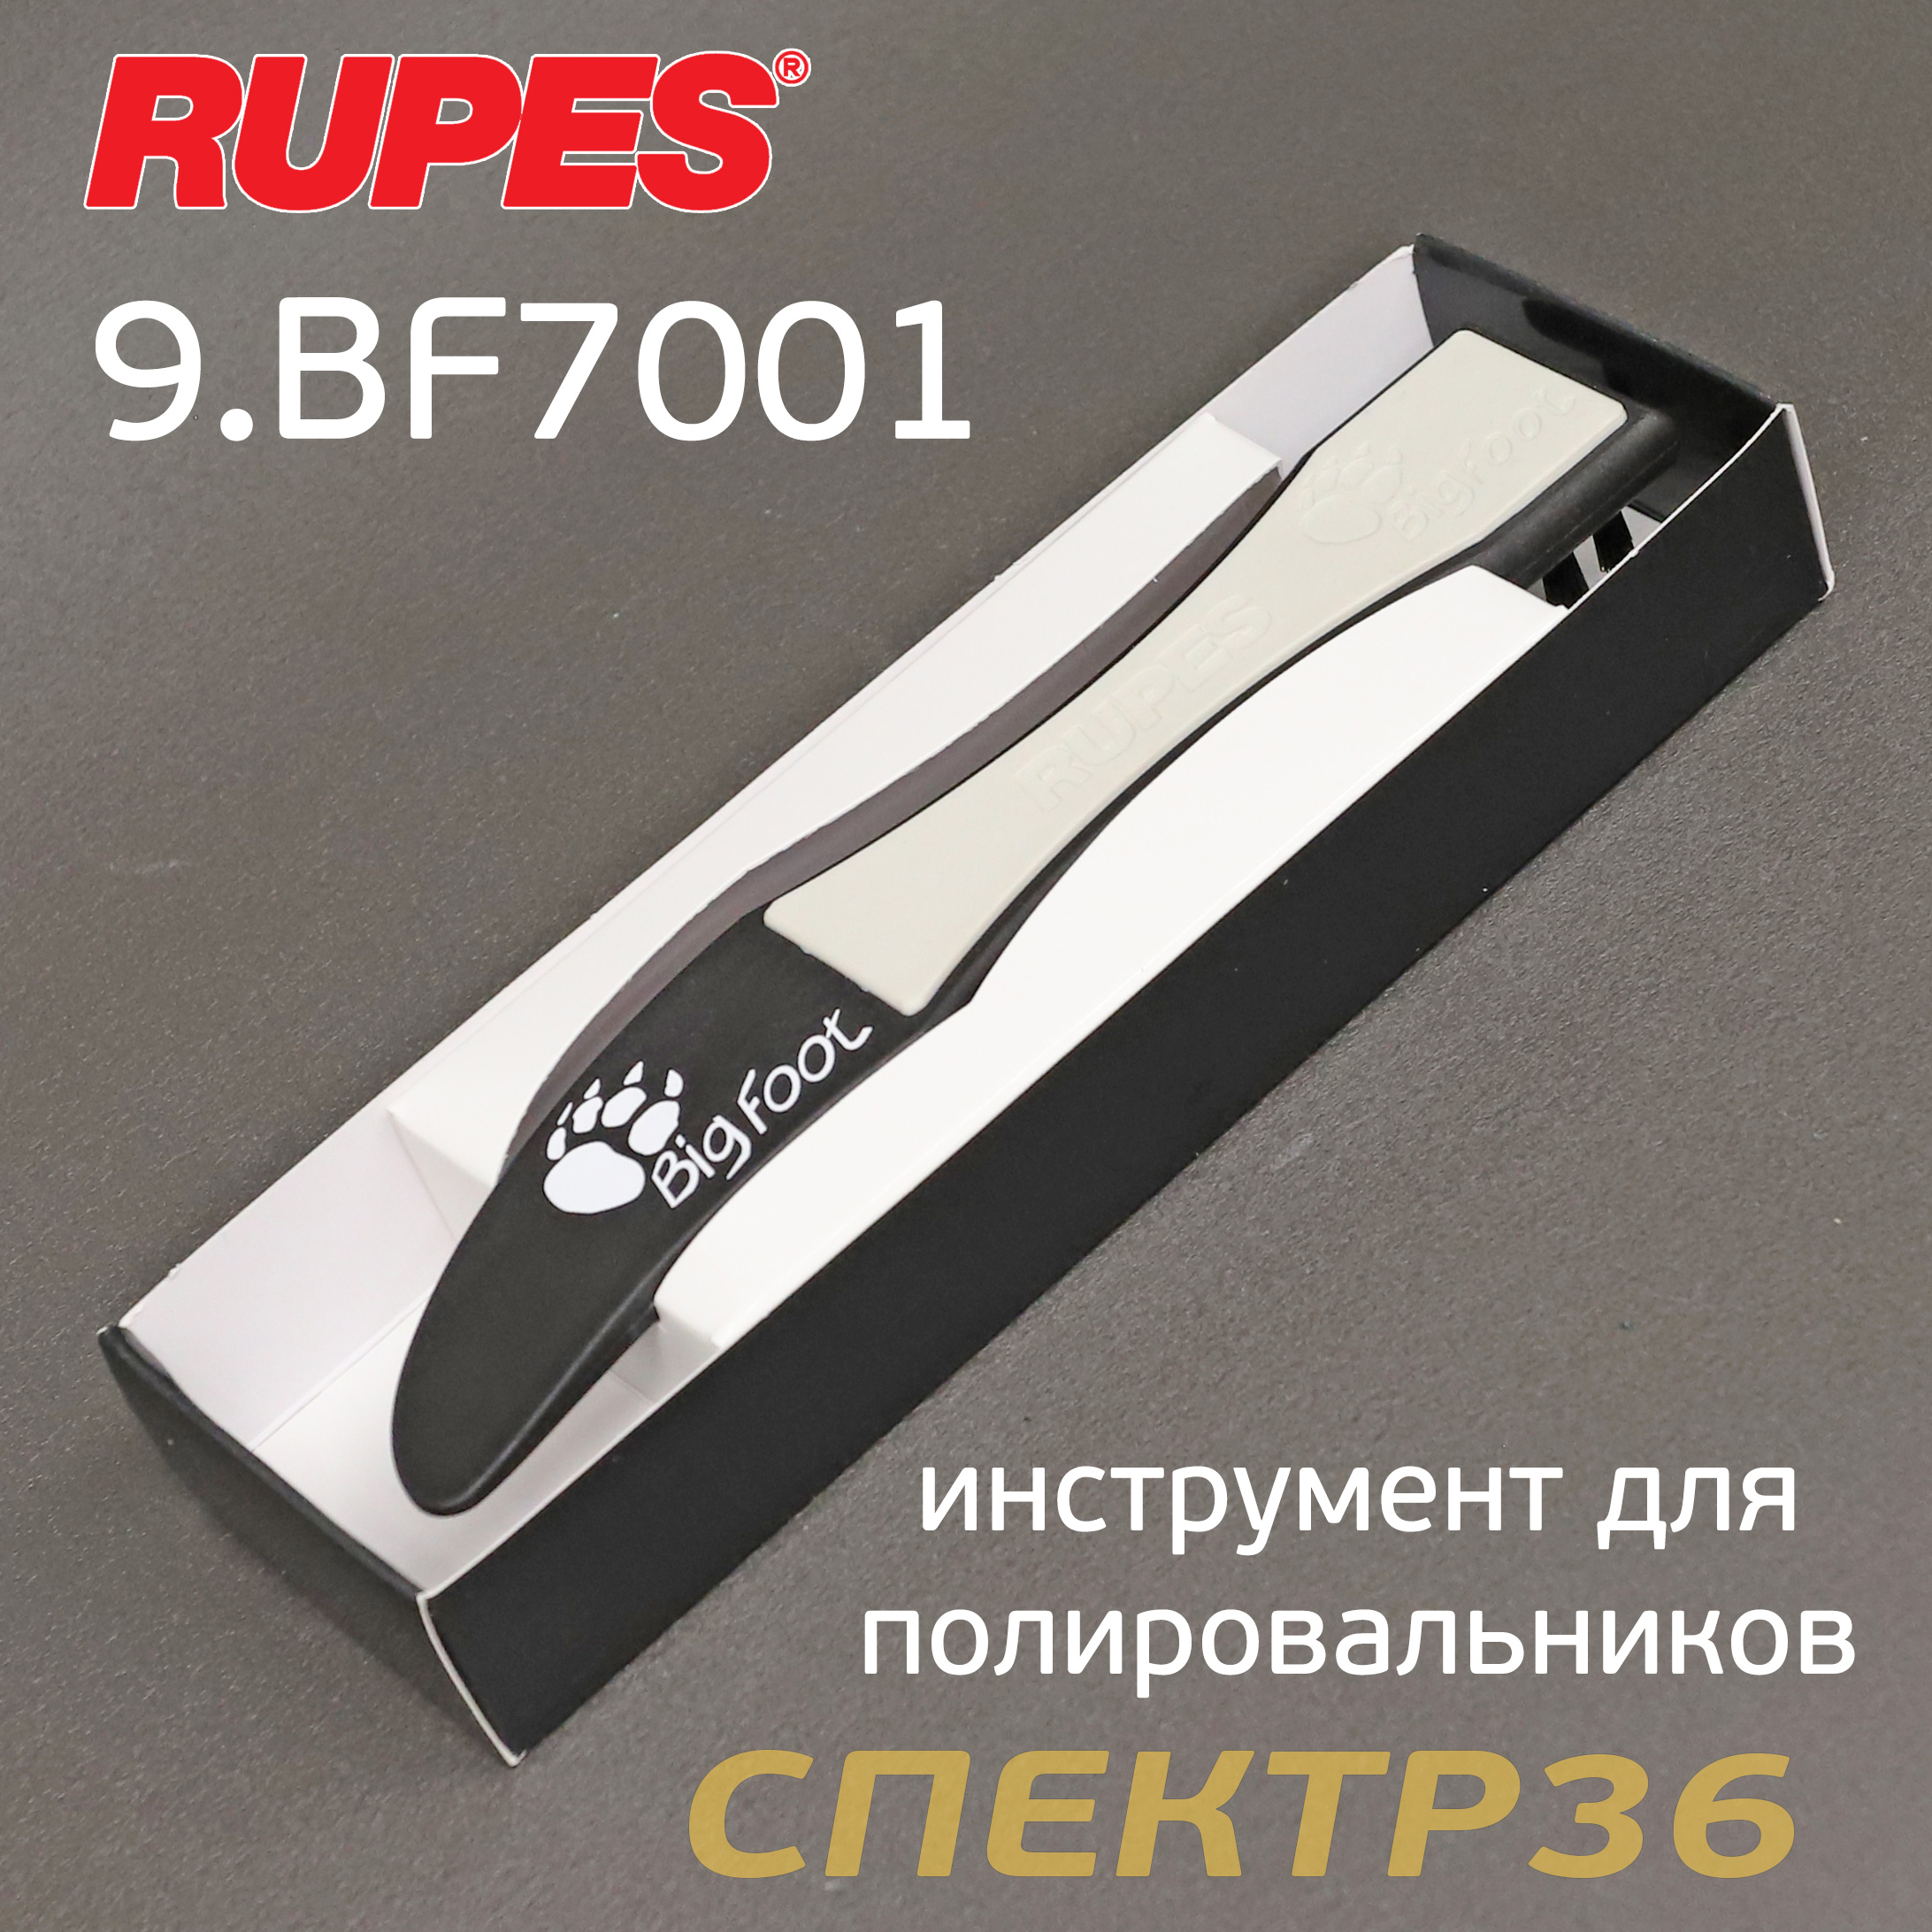 Инструмент Rupes BigFoot для снятия и чистки полировальных дисков (щетка)